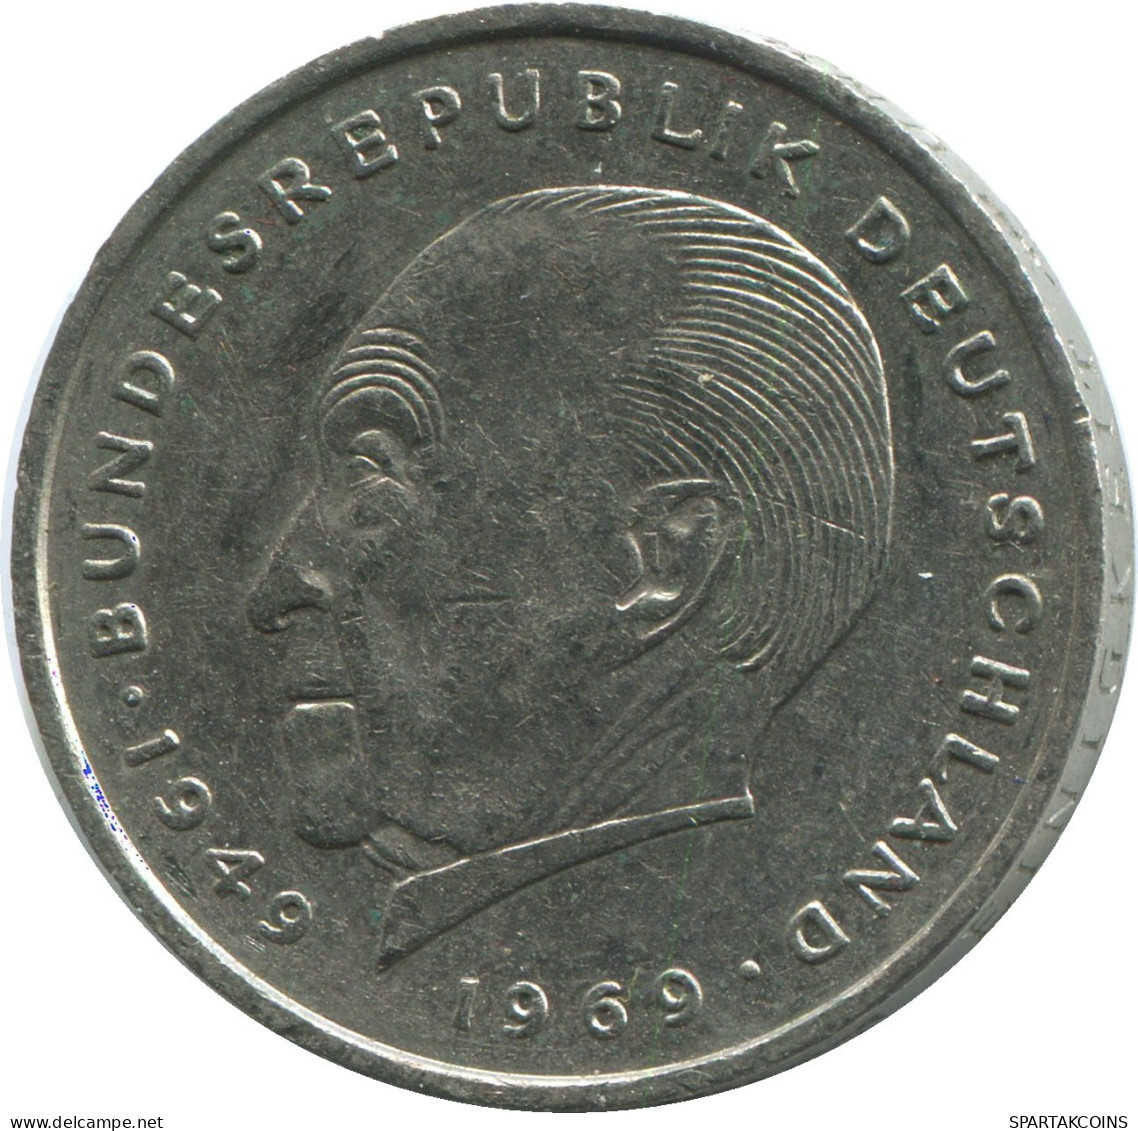 2 DM 1971 J BRD ALEMANIA Moneda GERMANY #DE10381.5.E.A - 2 Mark